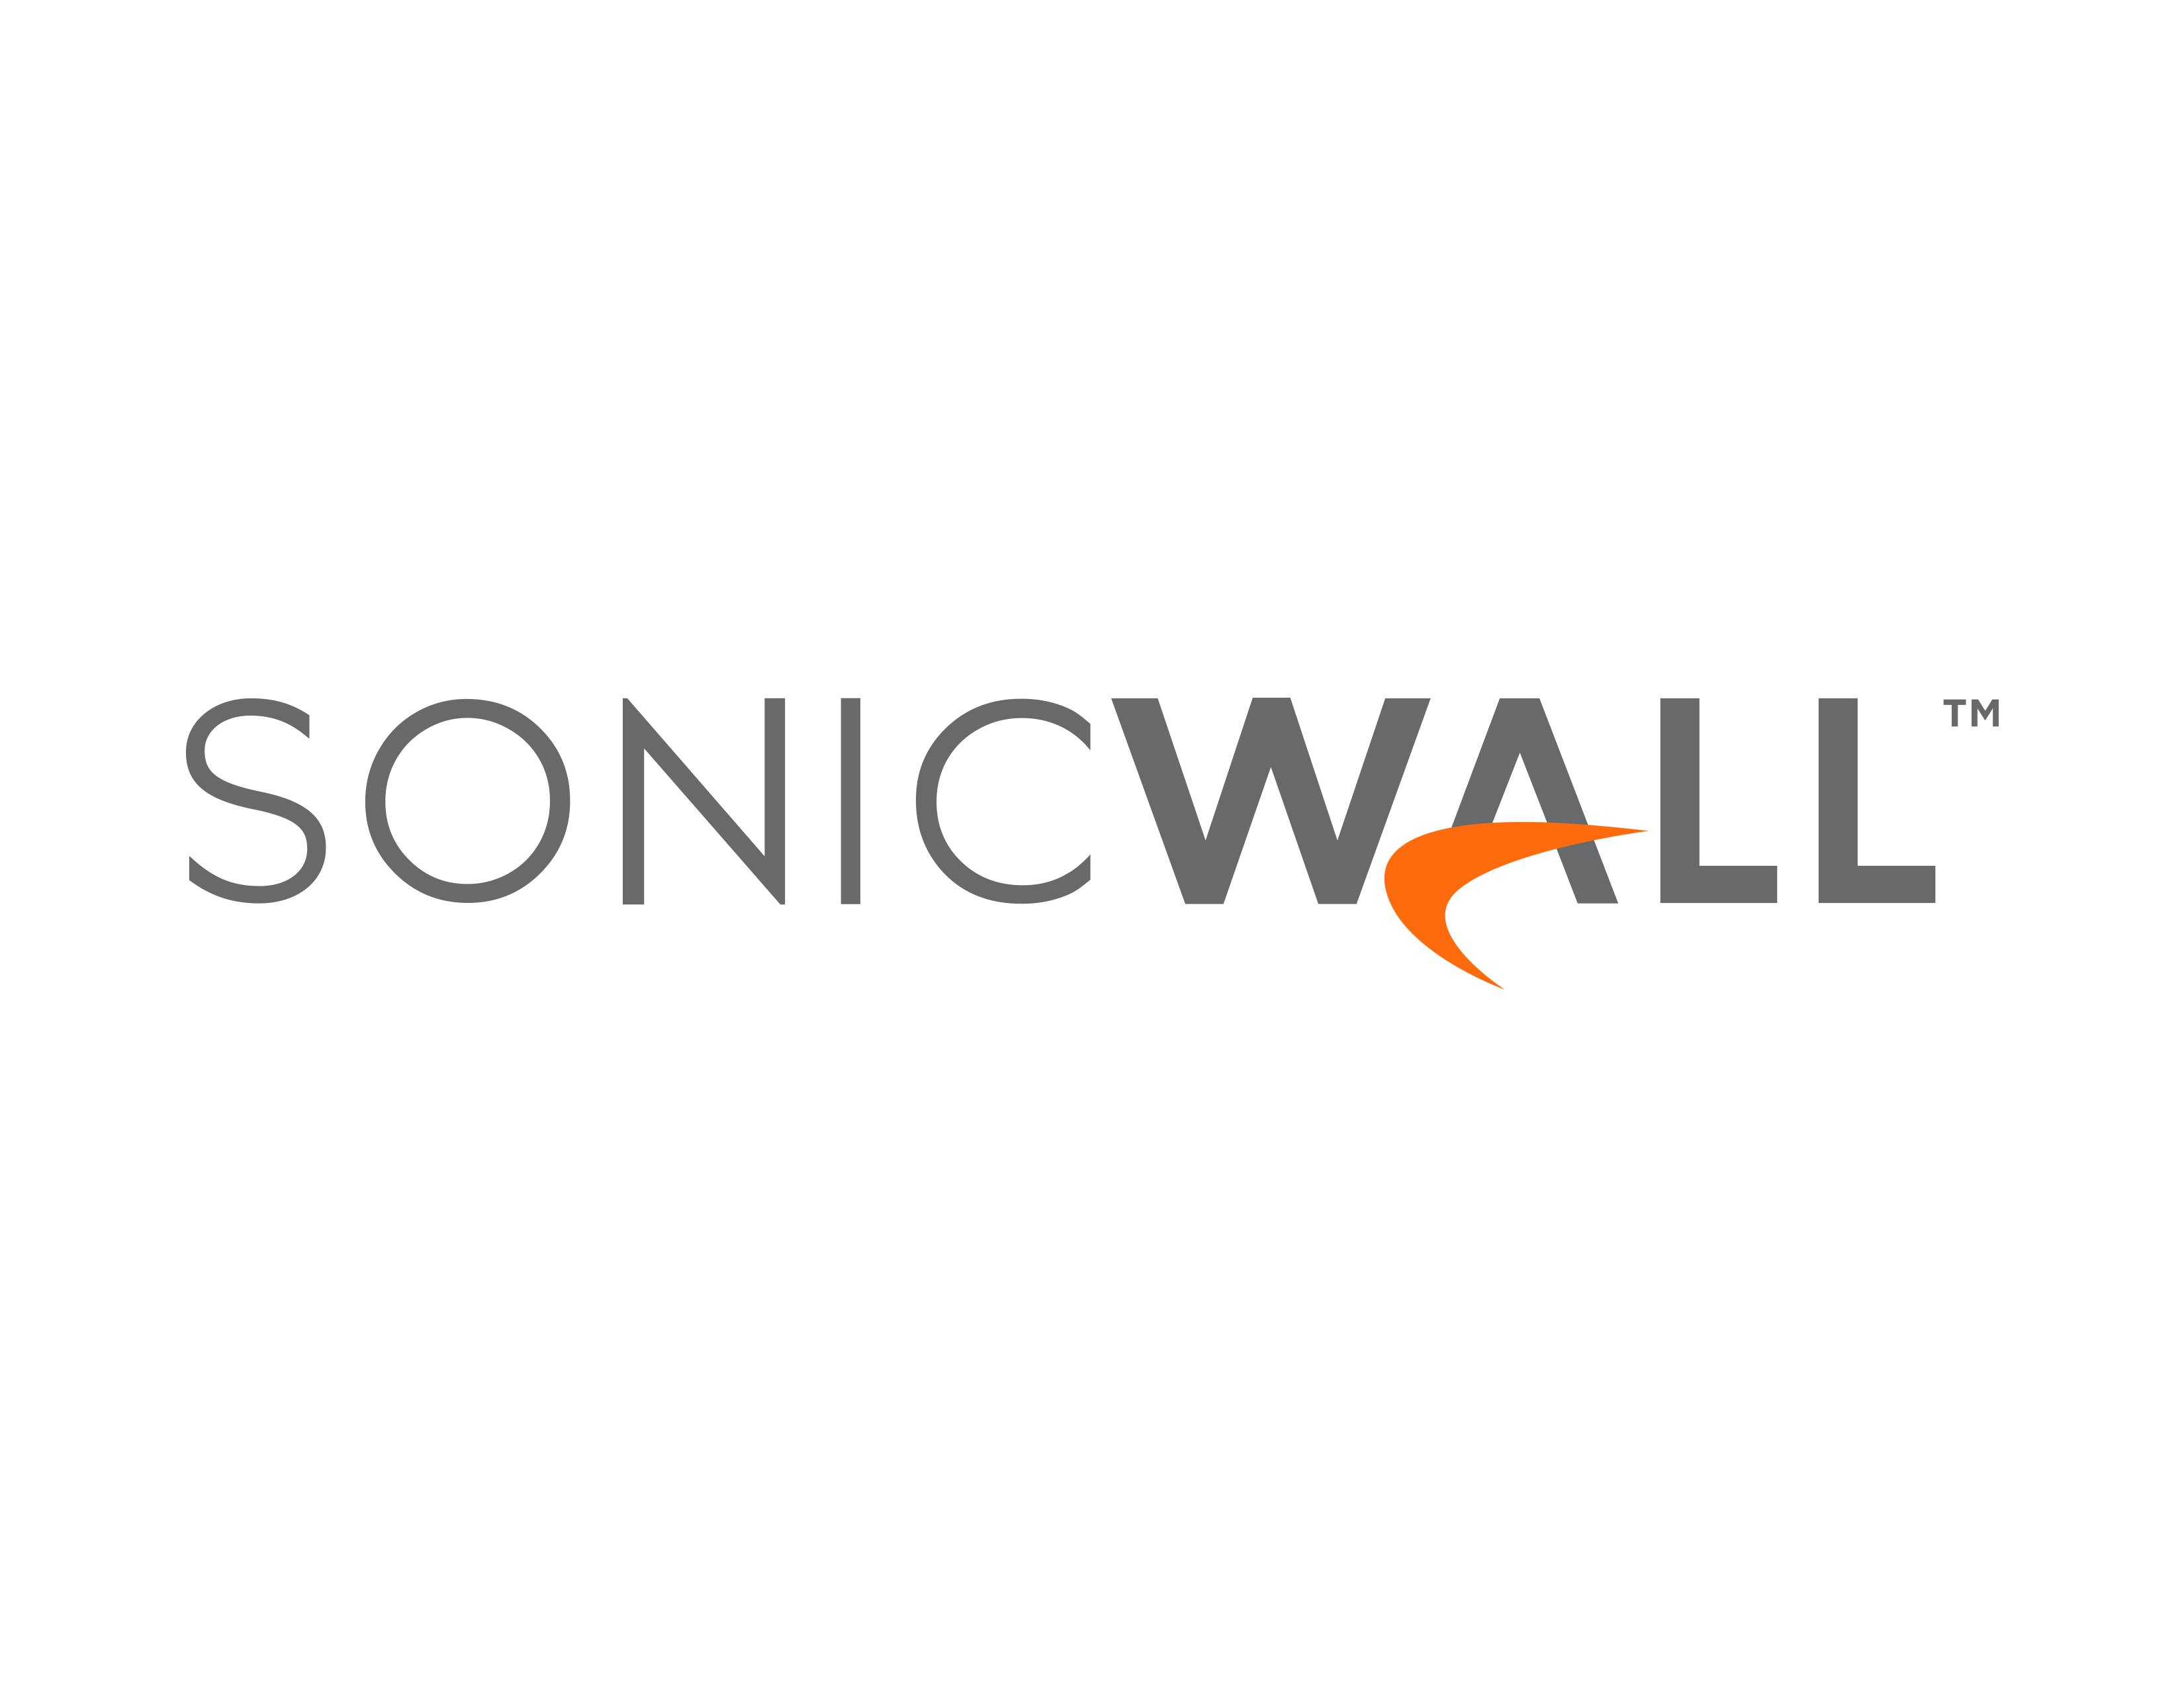 Sonic Wall